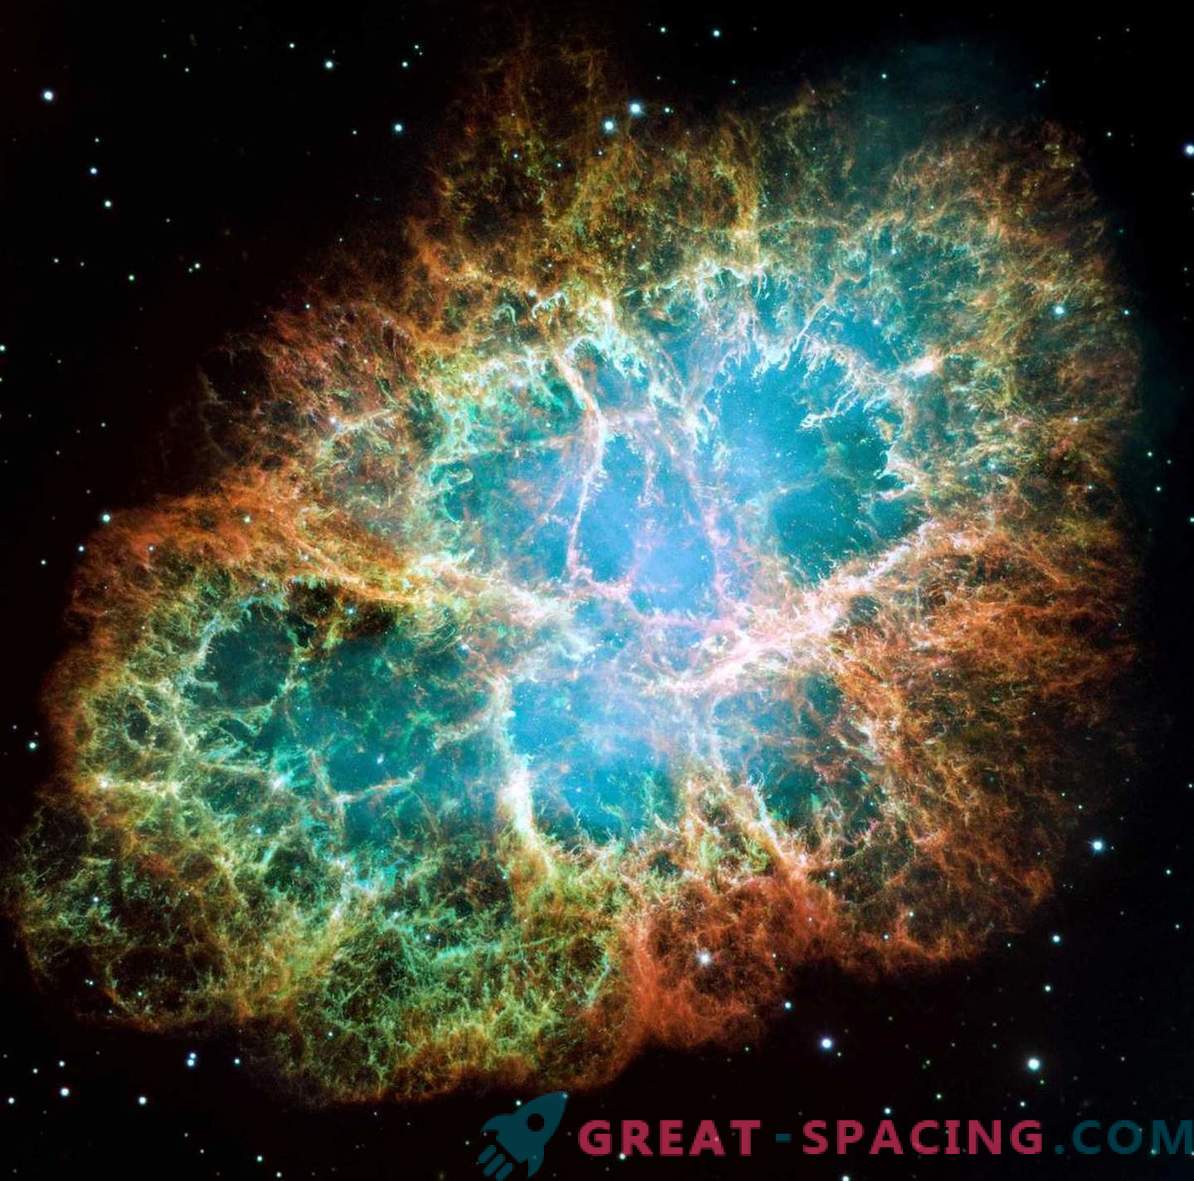 Astronomer registrerade först en supernovaexplosion i detalj.